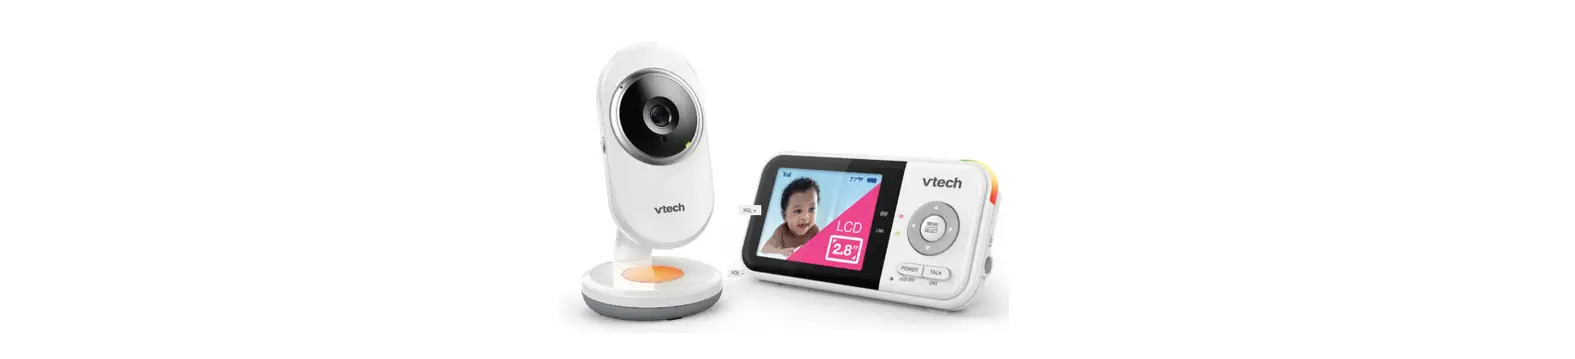 VM3254-2 Video Baby Monitor